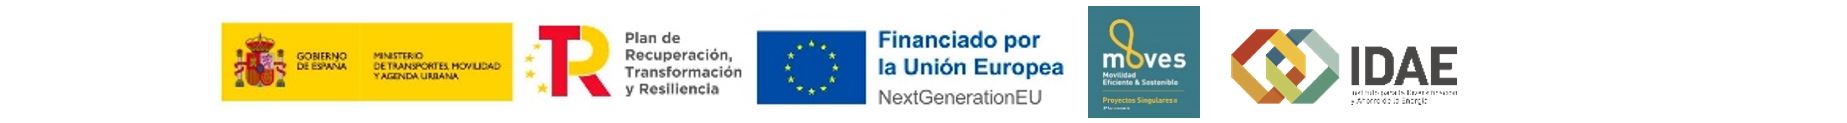 Logos dels fons europeus Next Generation